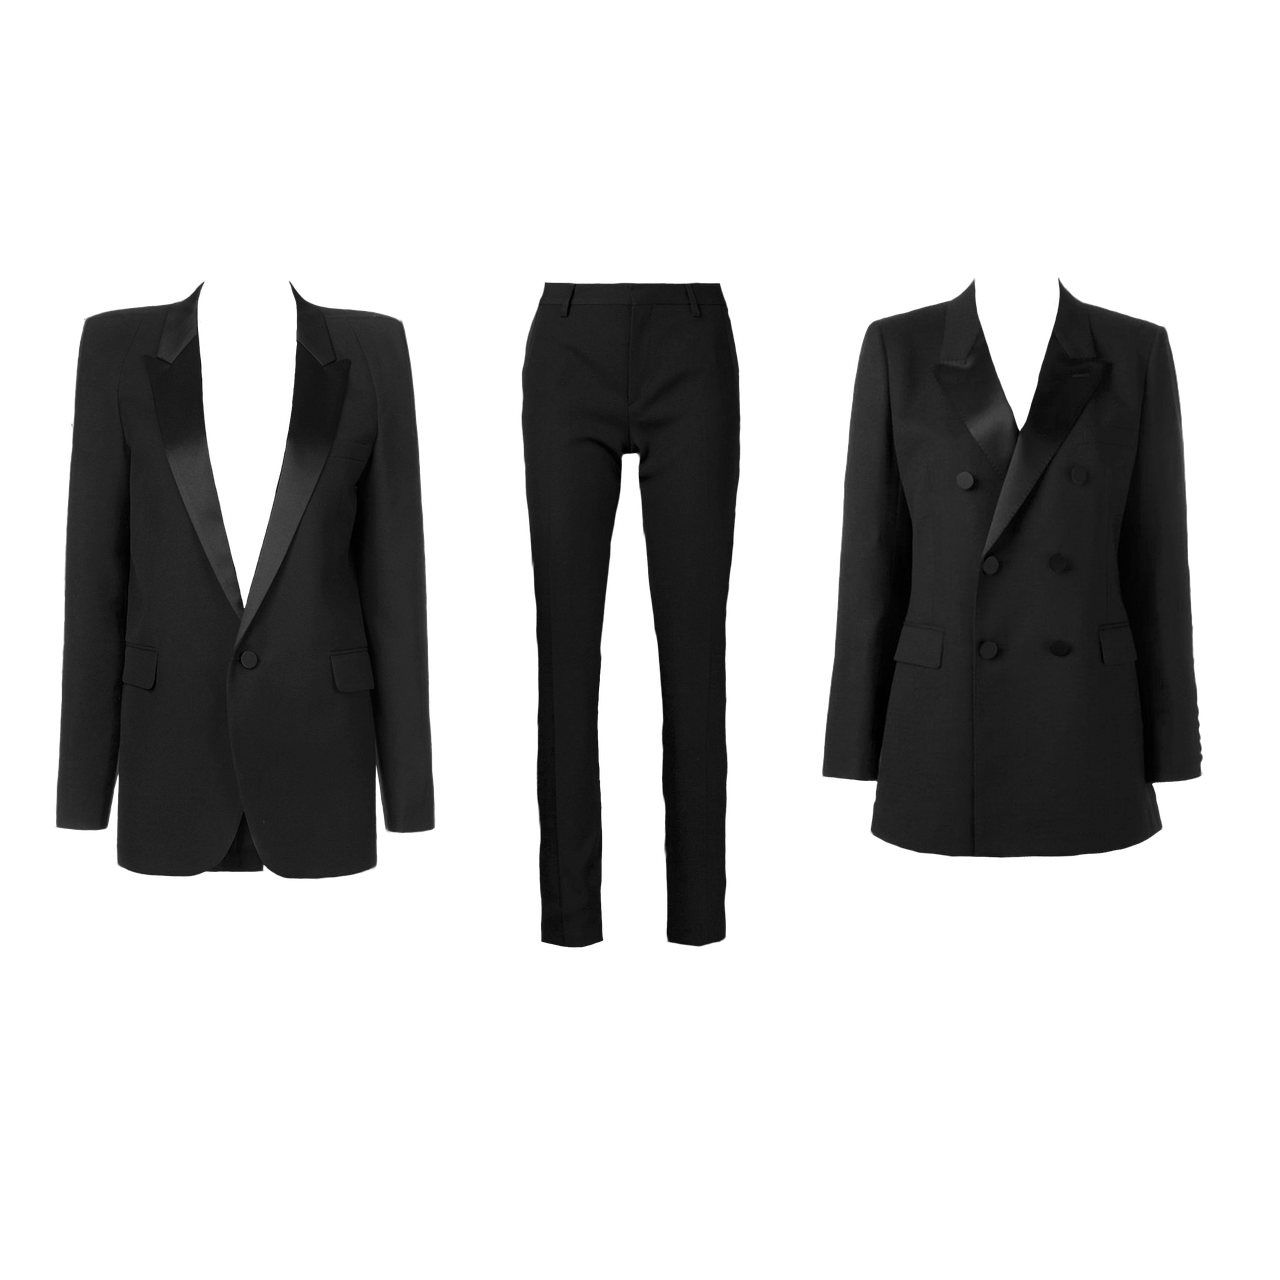 Suit Anatomy